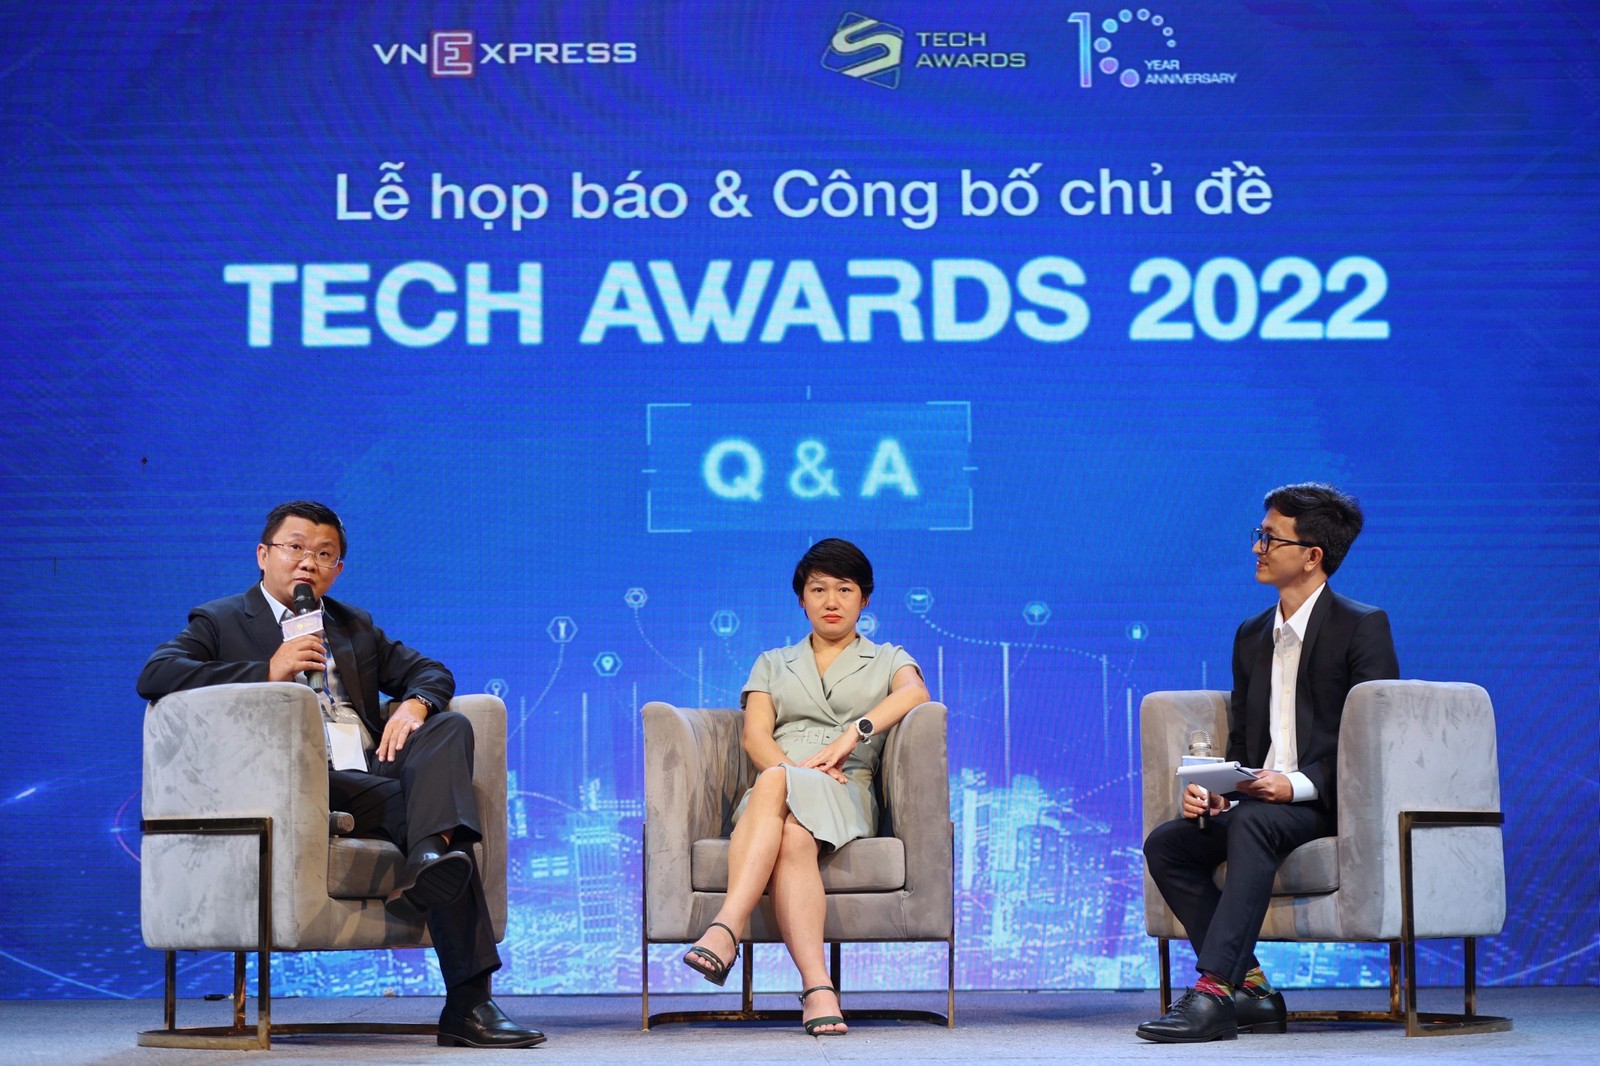 Tech Awards 2022 quy tụ hơn 60 sản phẩm và hơn 40 thương hiệu được đề cử